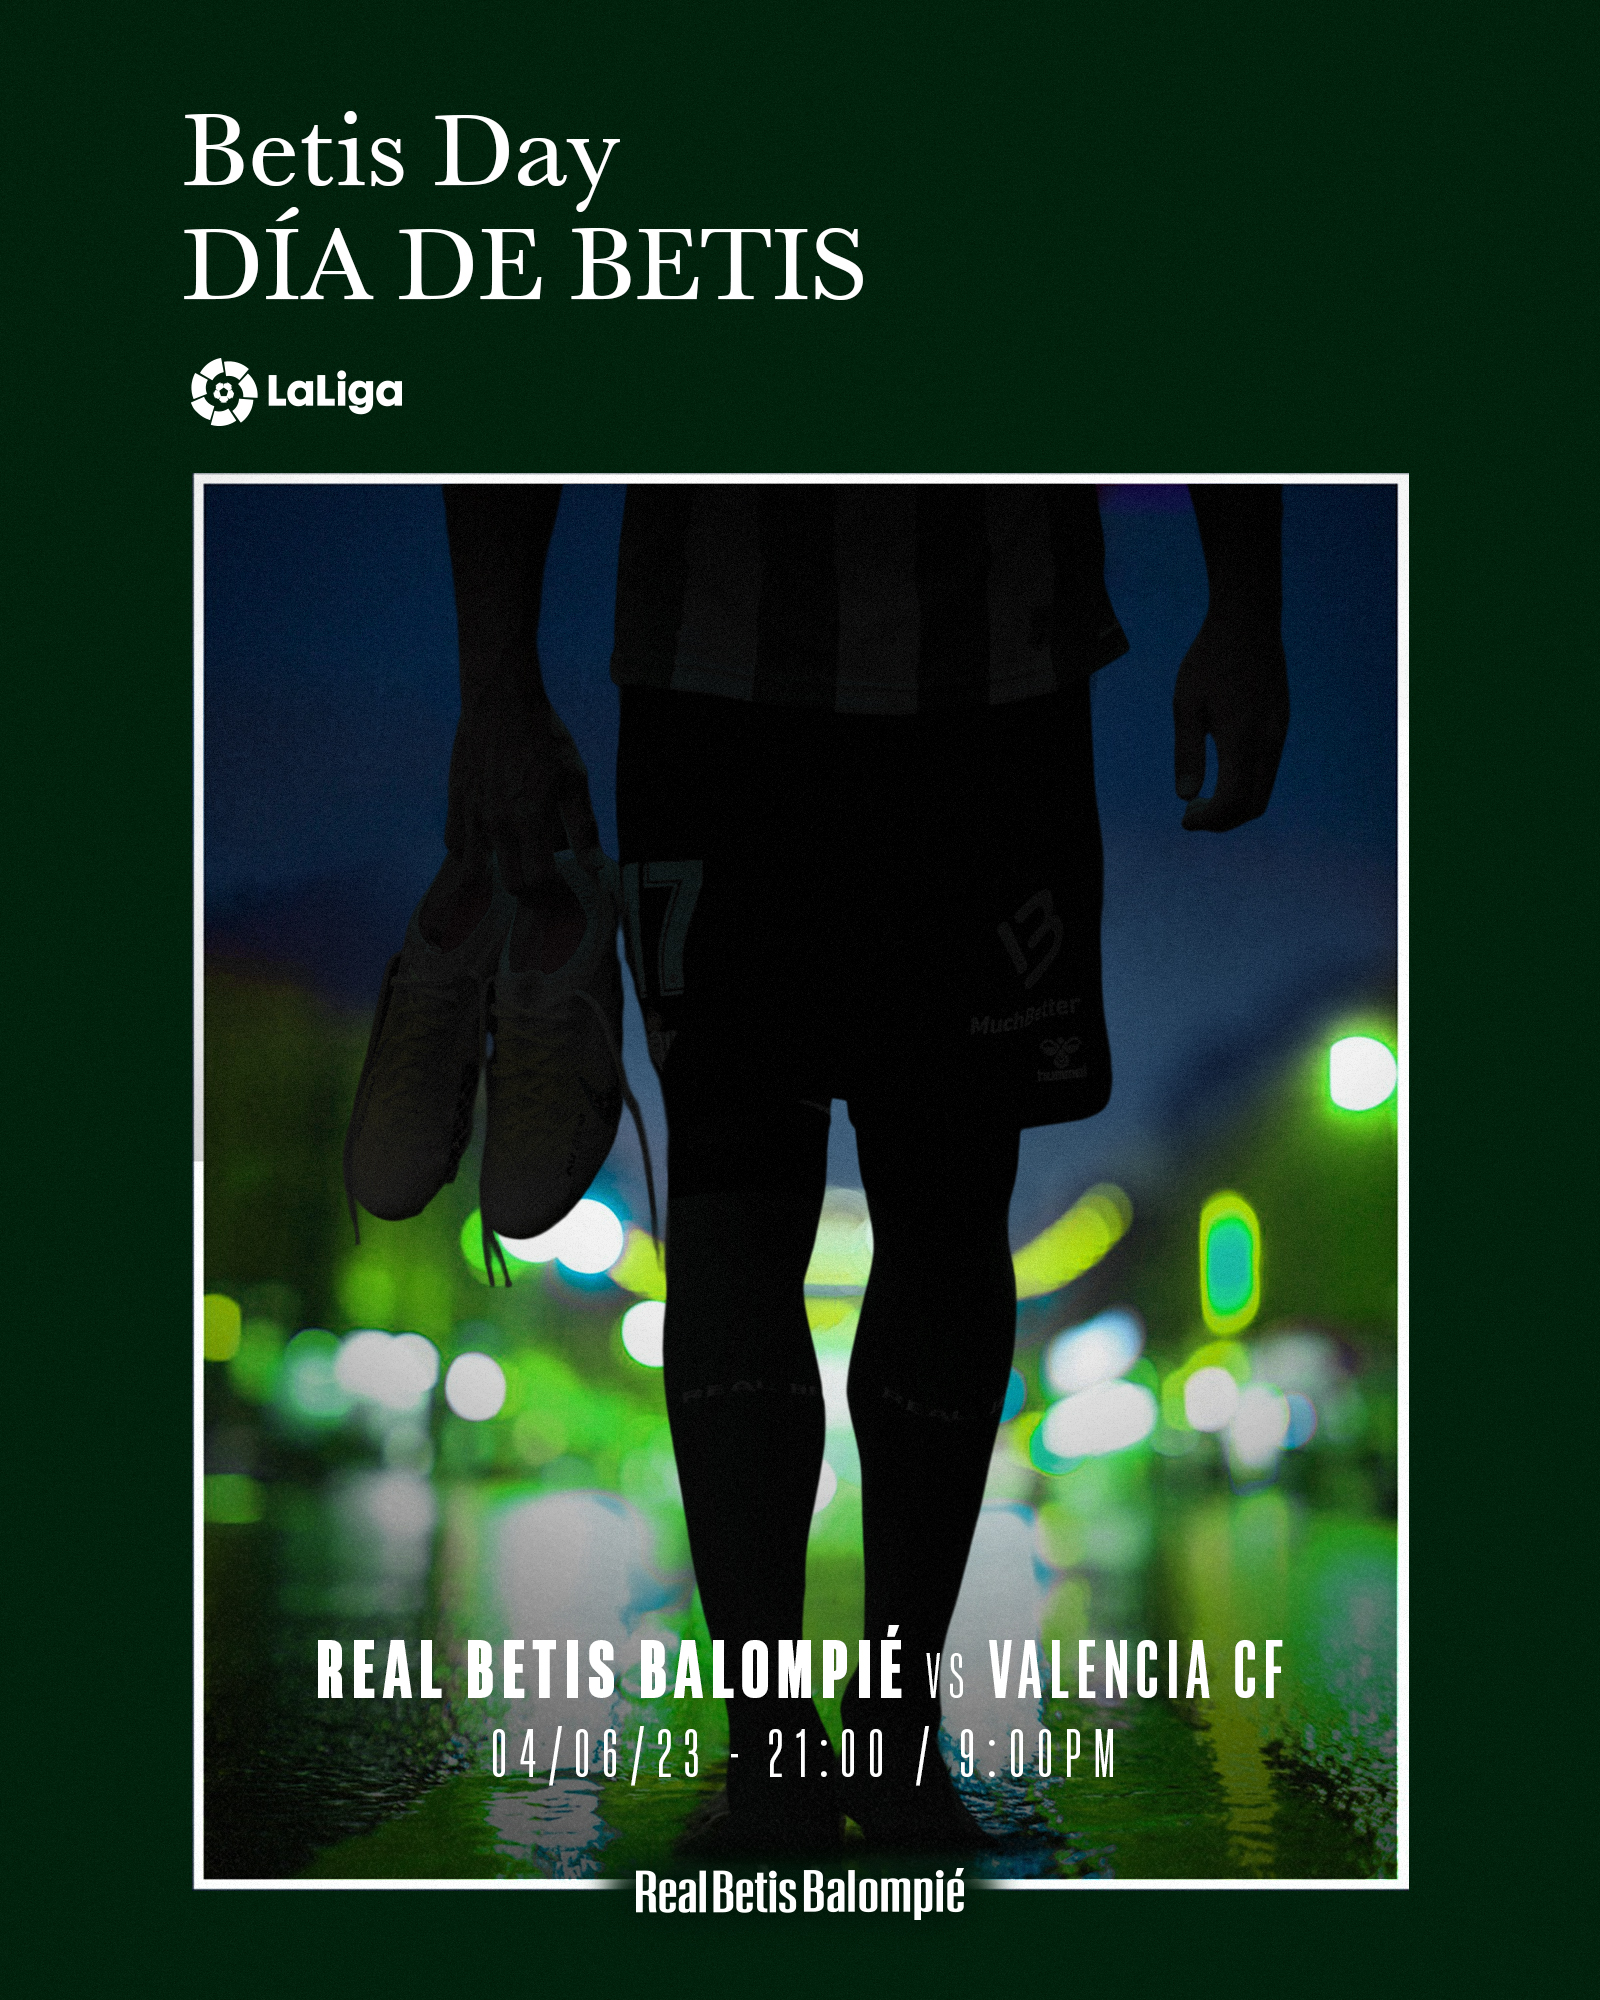 Real Betis Balompié 🌴💚 on X: ¡Ideas para regalar por San Valentín en  nuestras tiendas oficiales! 💞🎁👇 ➡    / X